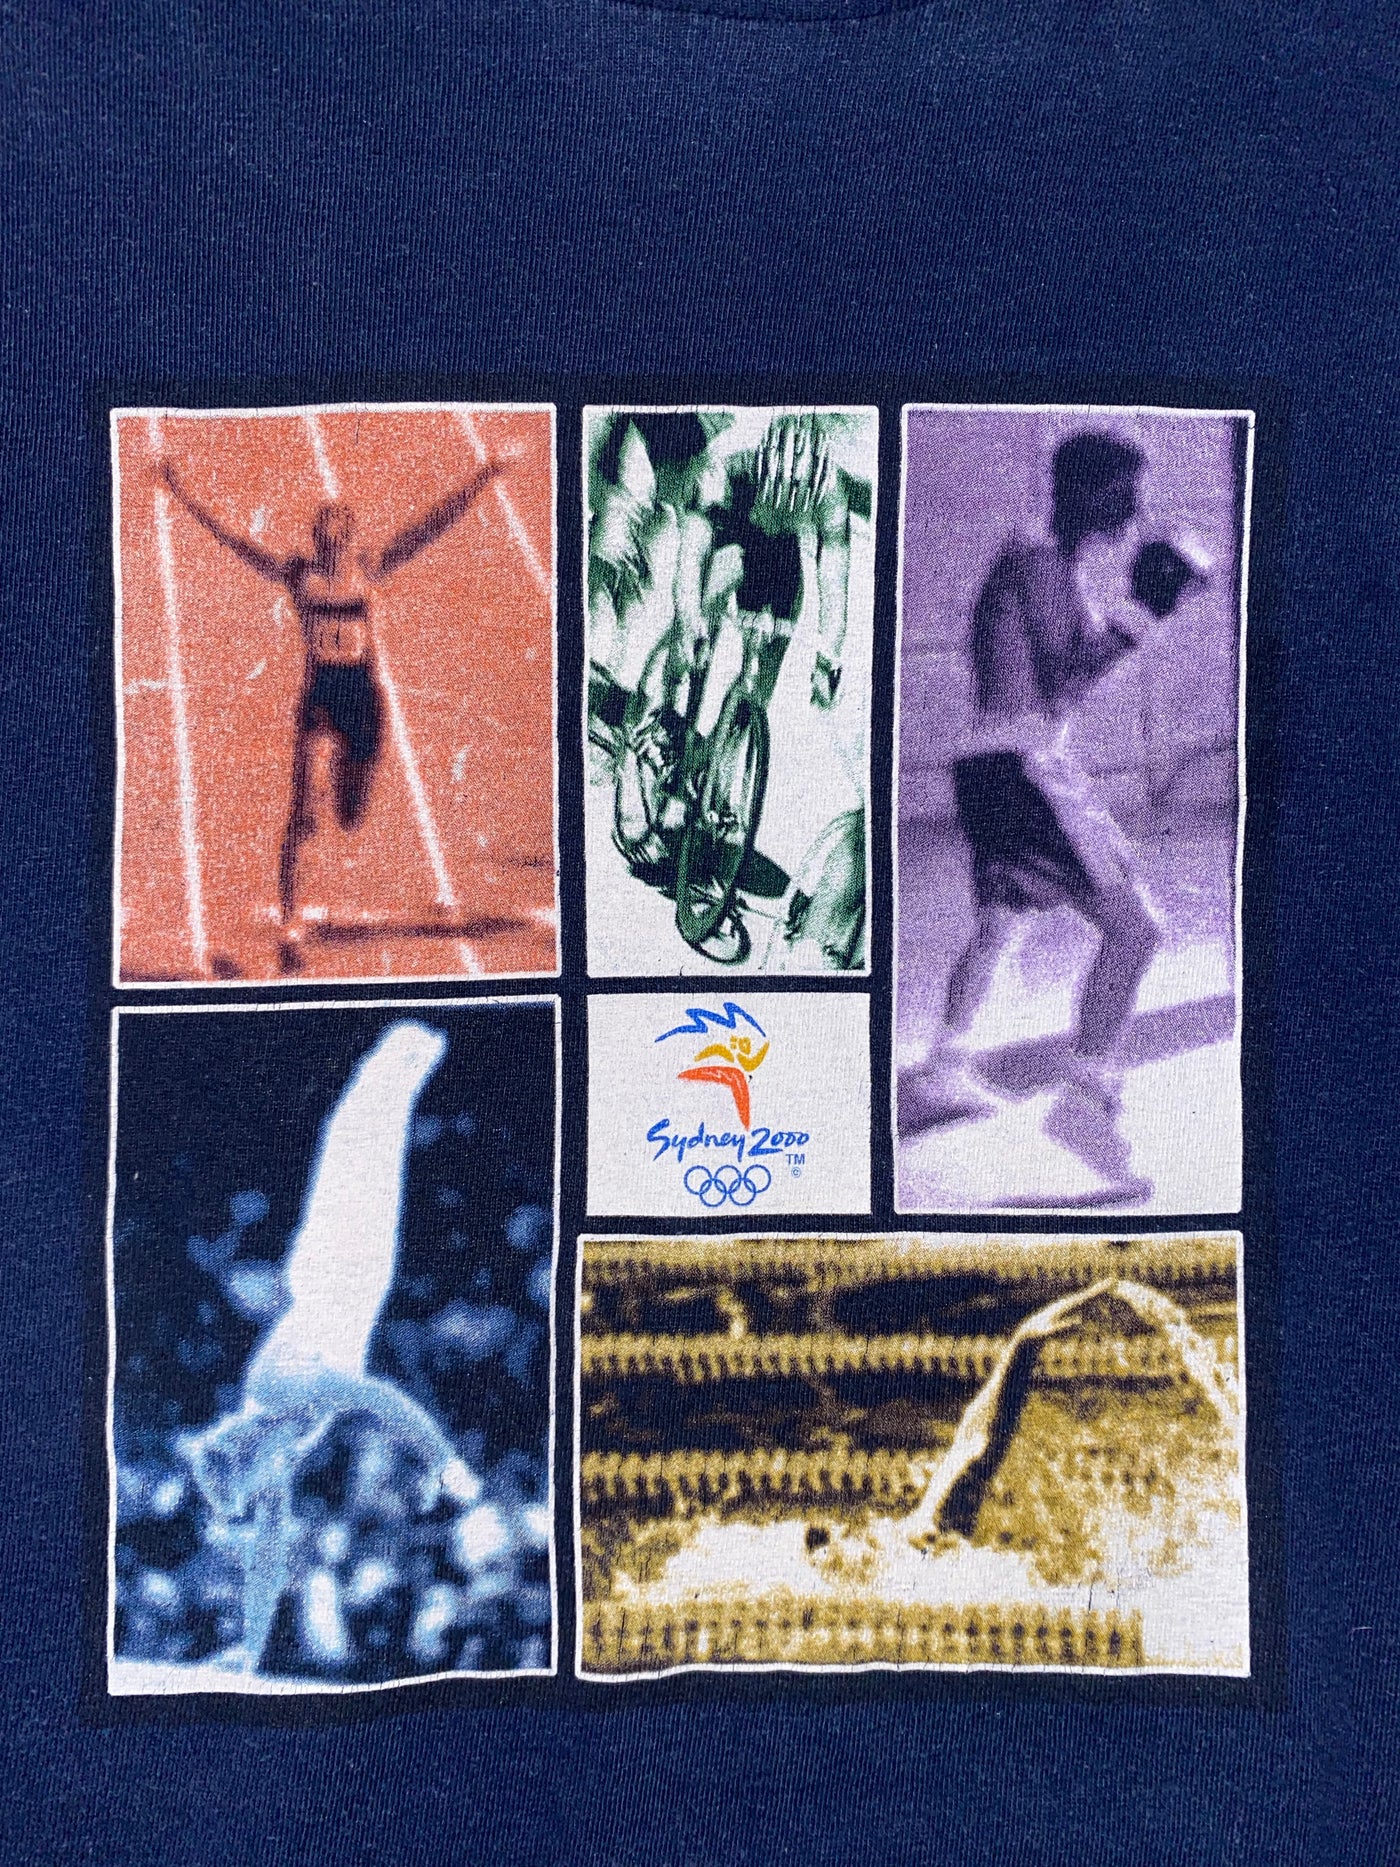 Vintage 2000 Olympics Sydney Australia T-Shirt